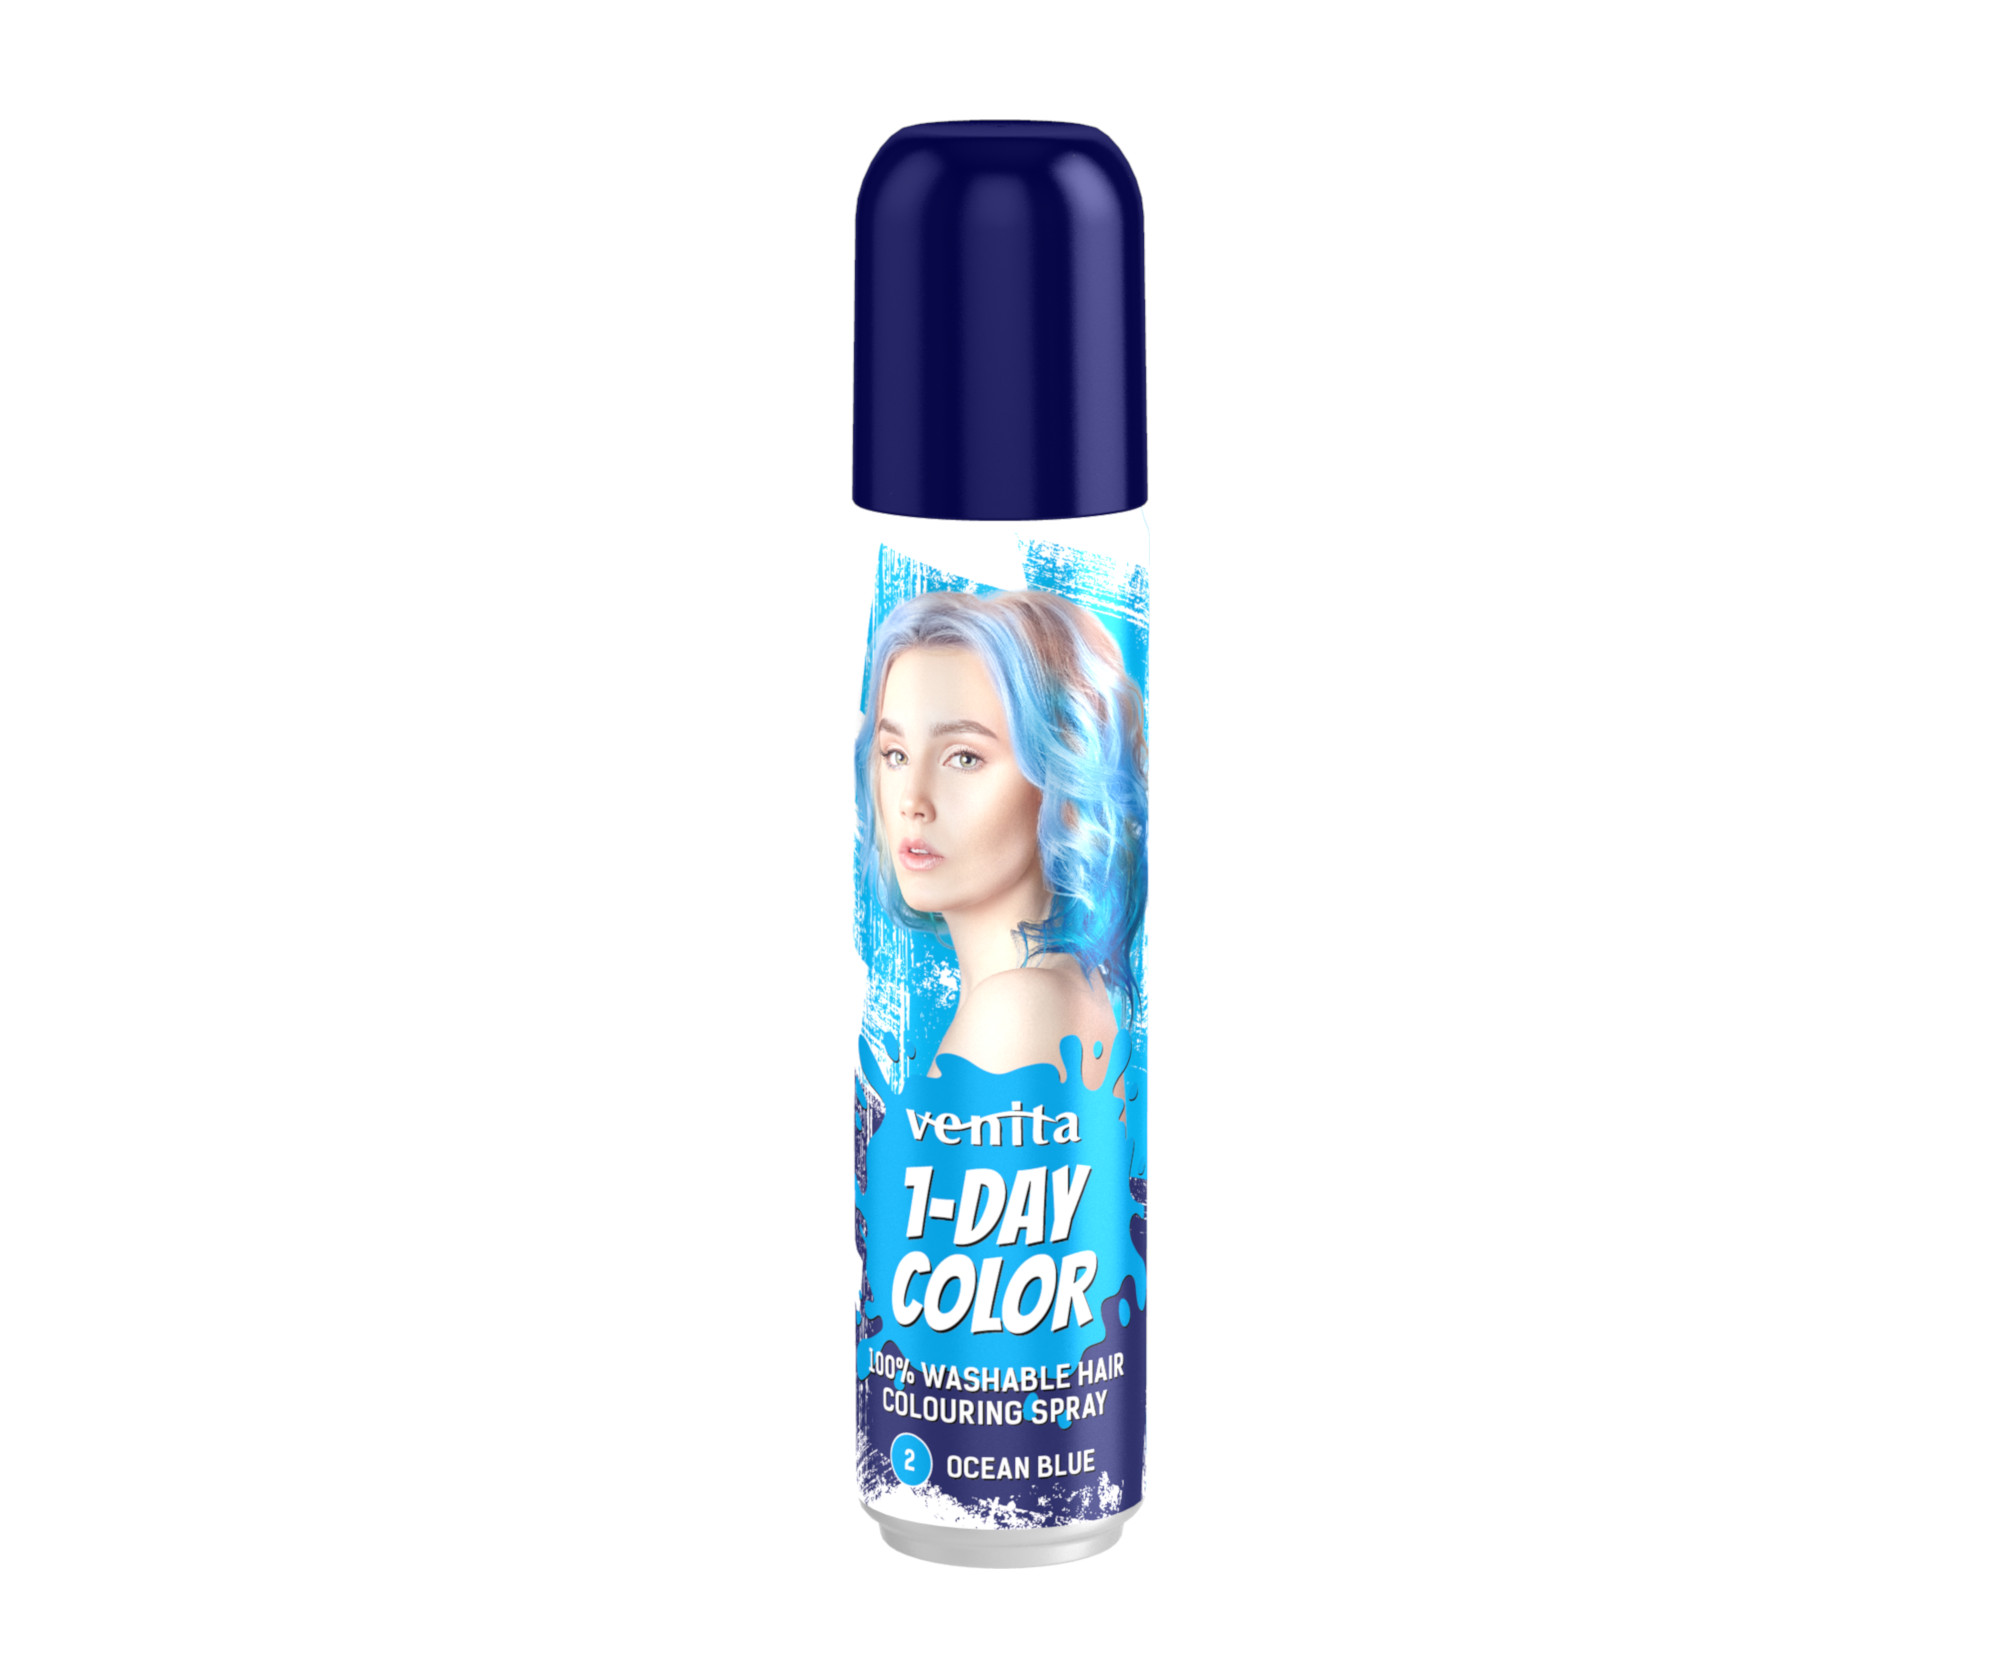 Barevný sprej na vlasy Venita 1-Day Color Ocean Blue - 50 ml, oceánově modrá (COB02)